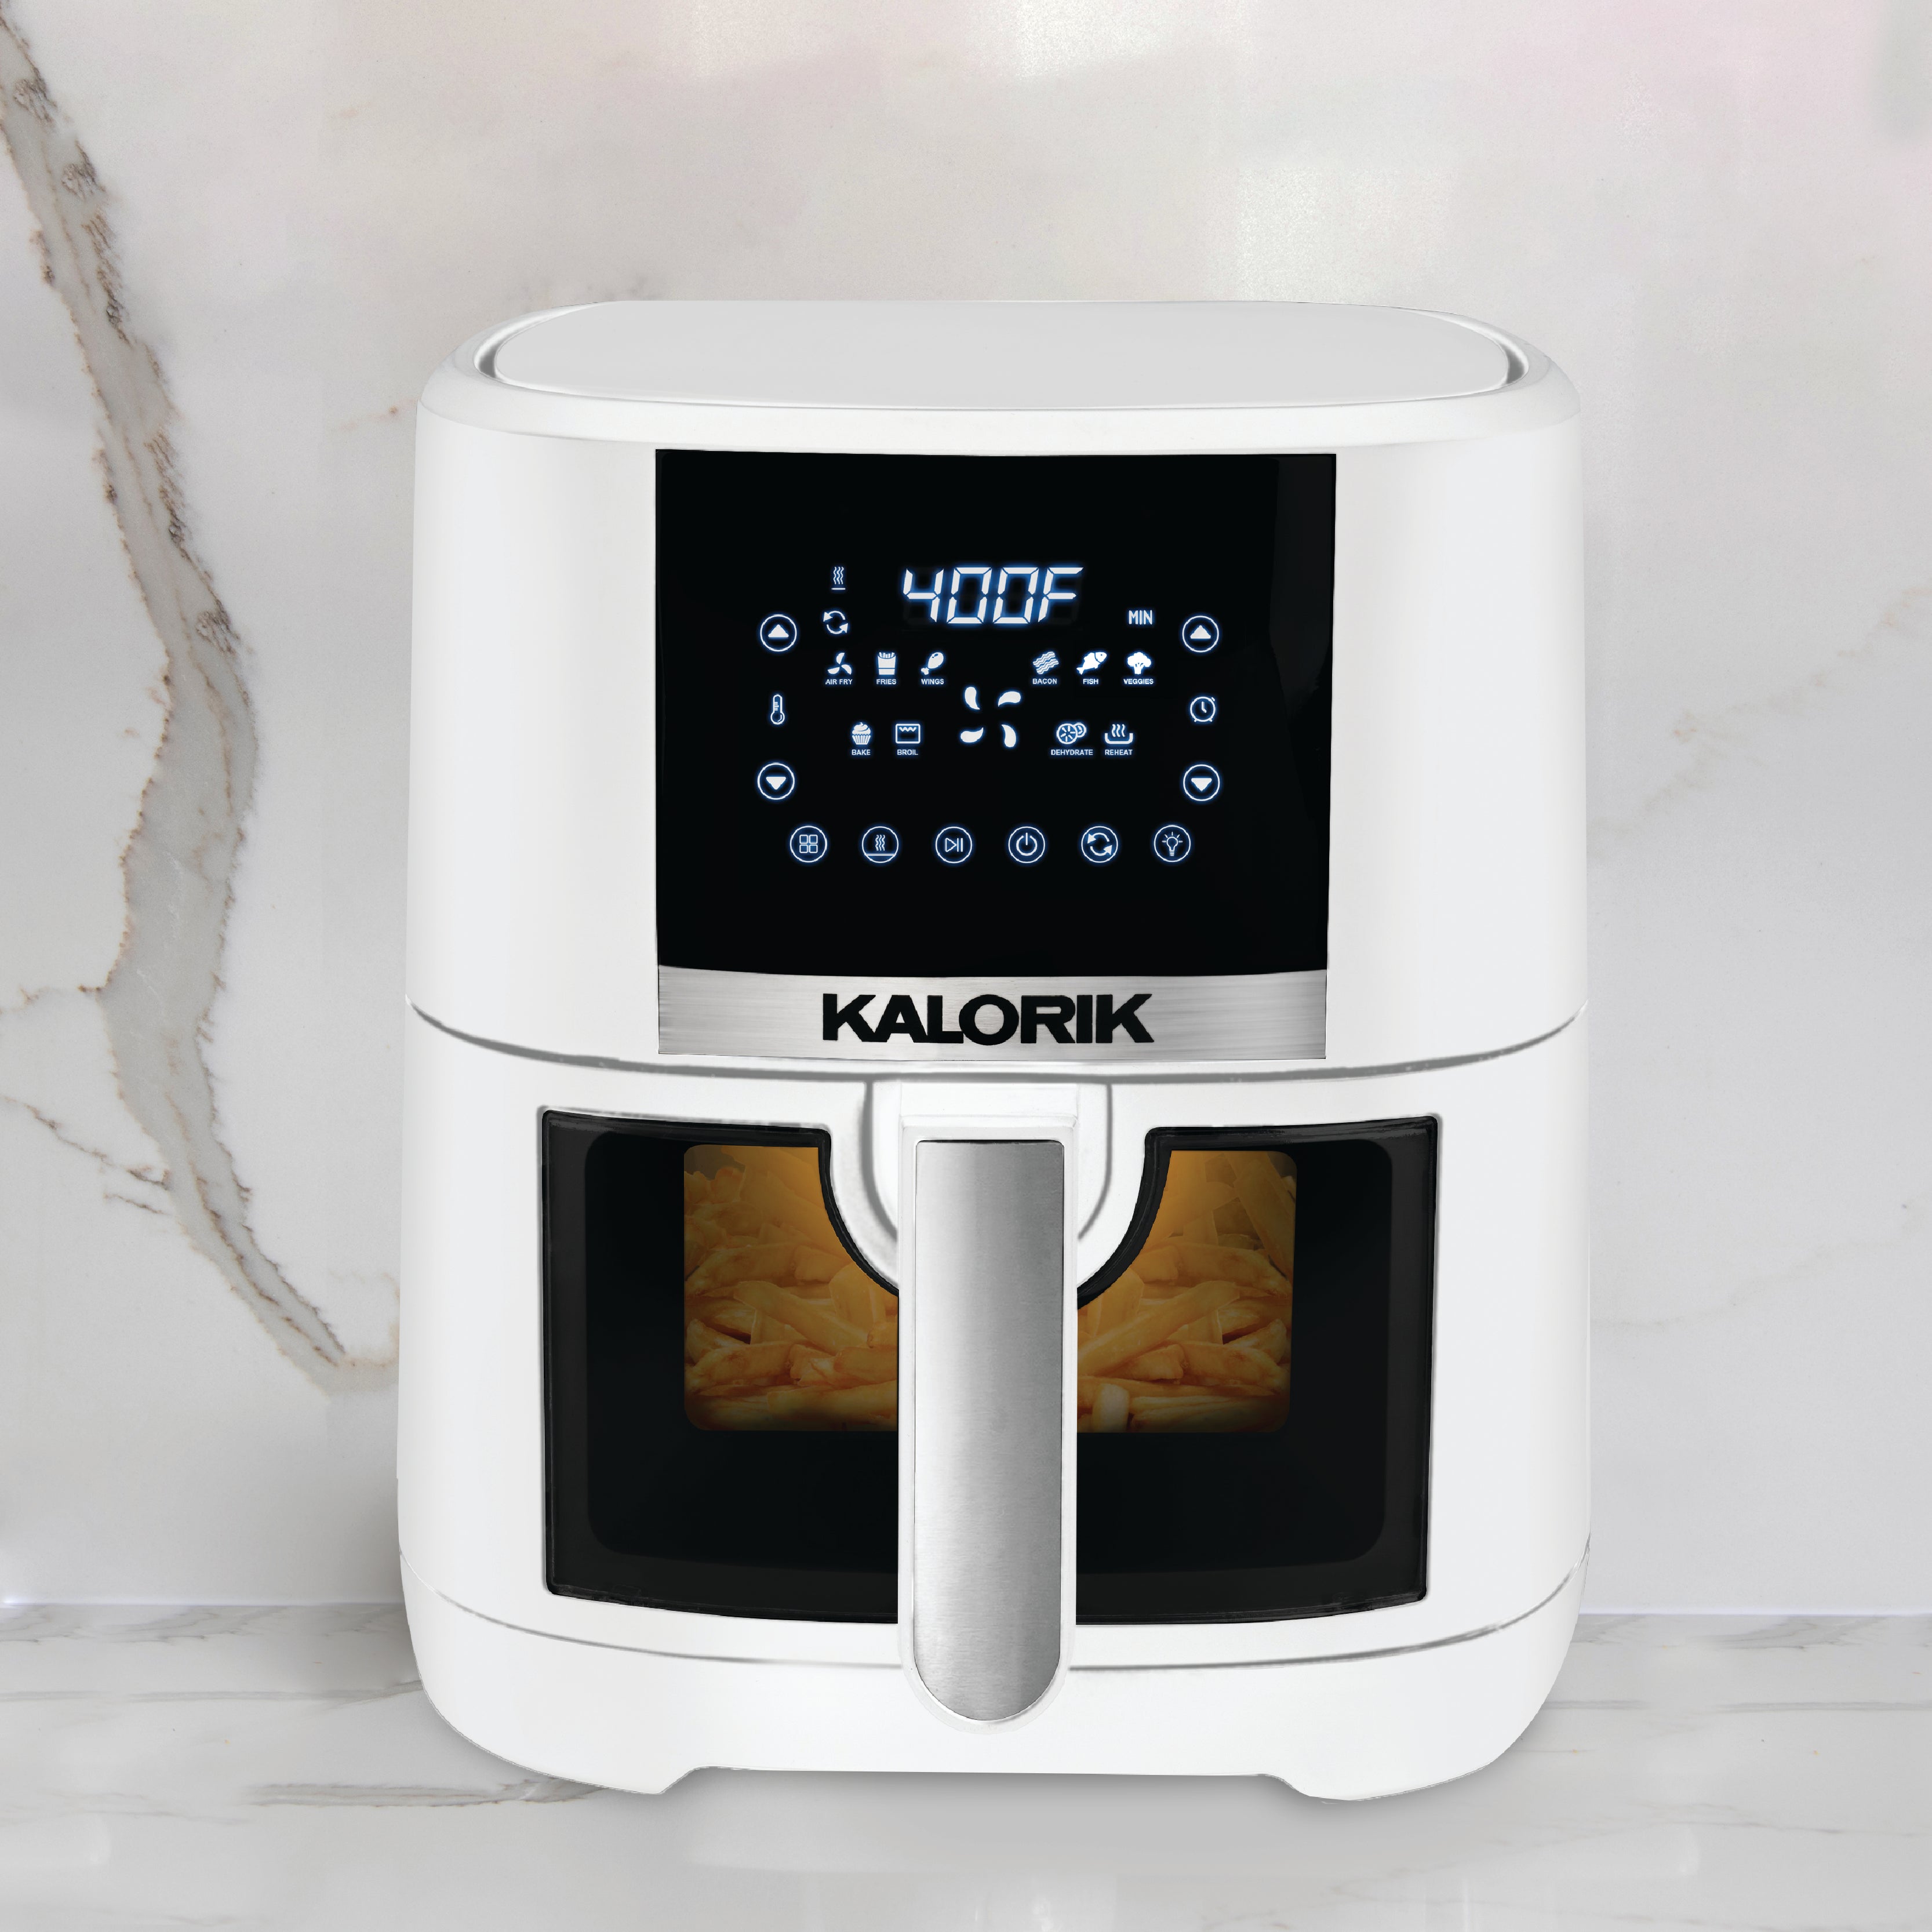 Kalorik® 5 Quart Air Fryer with Ceramic Coating and Window